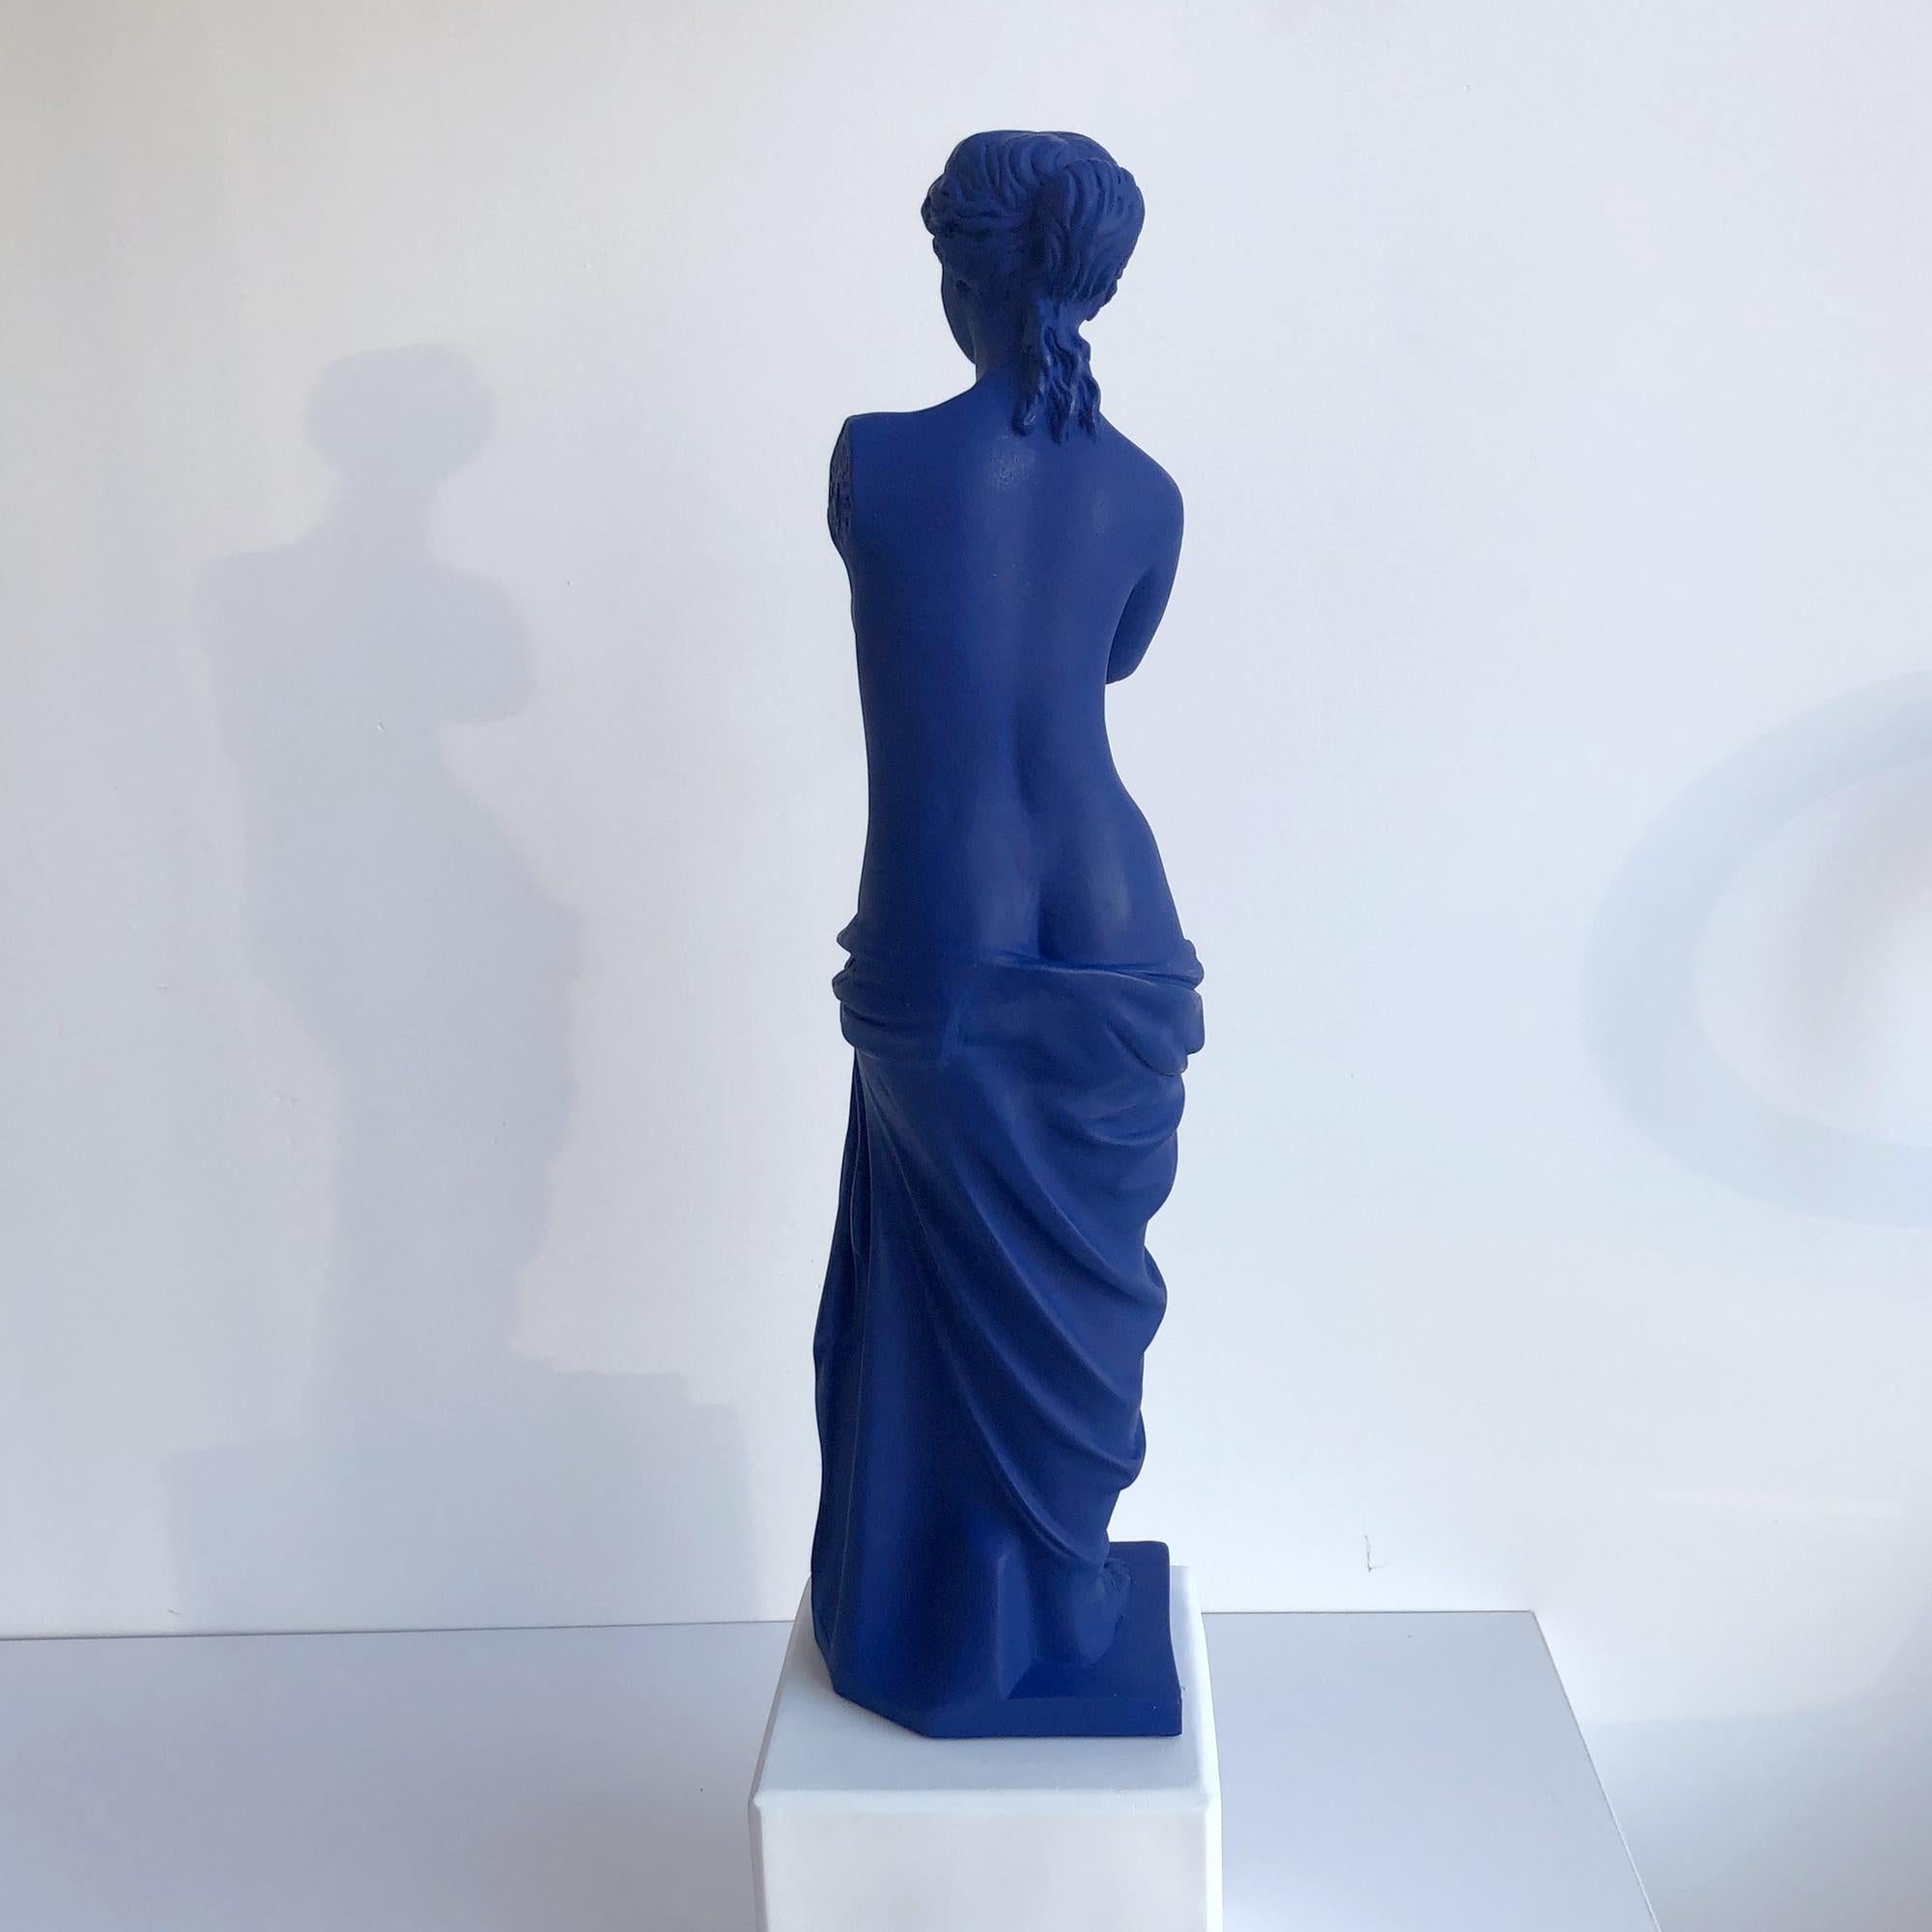 Greek In Stock in Los Angeles, Venus De Milo Statue in Blue